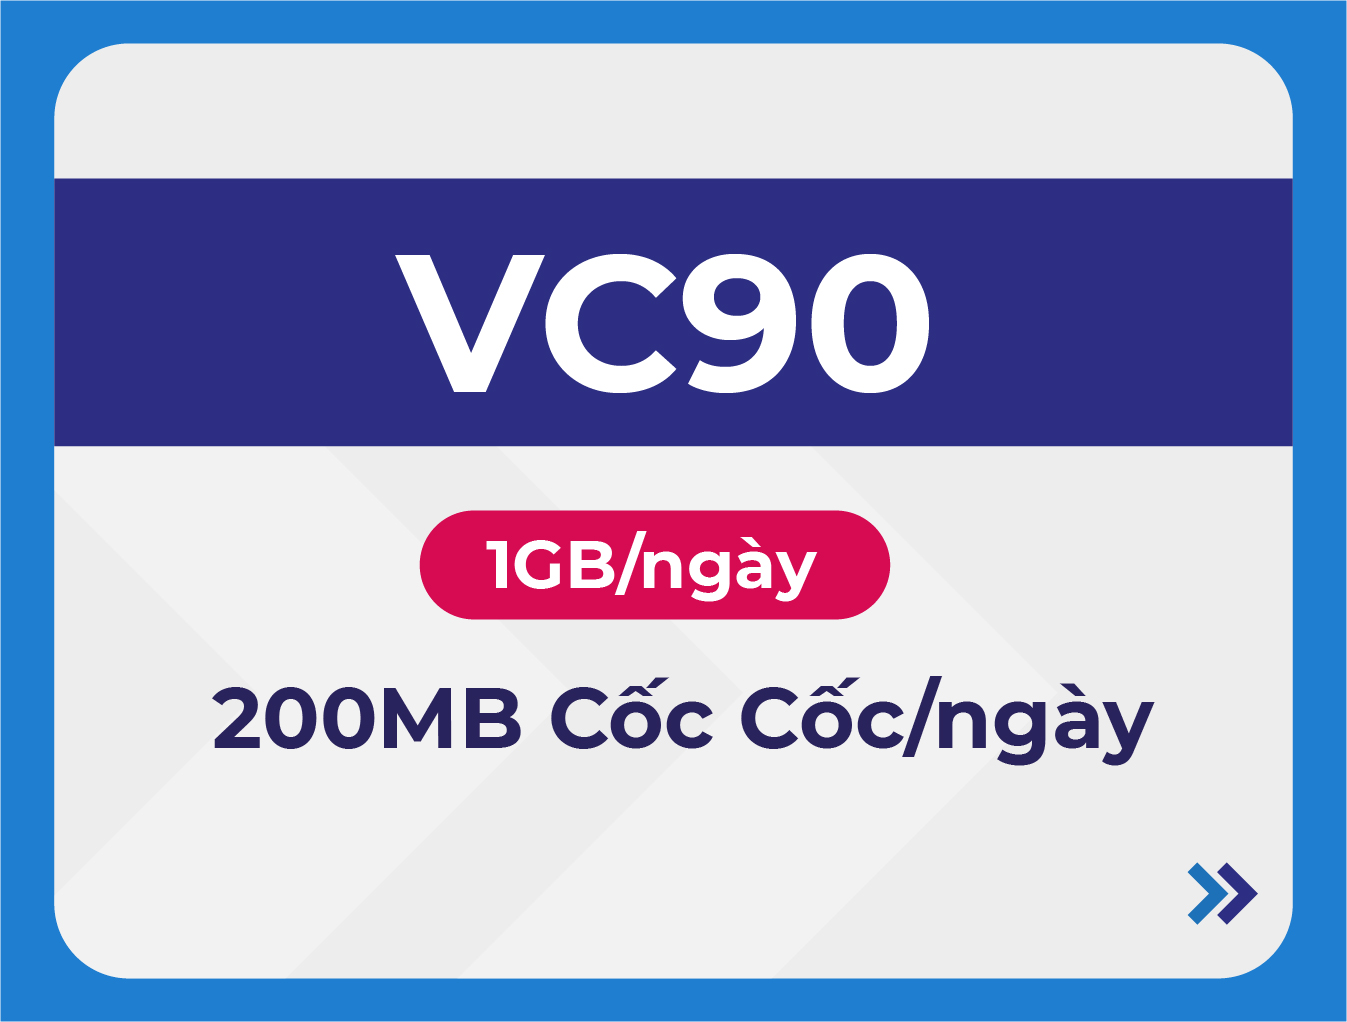 VC90